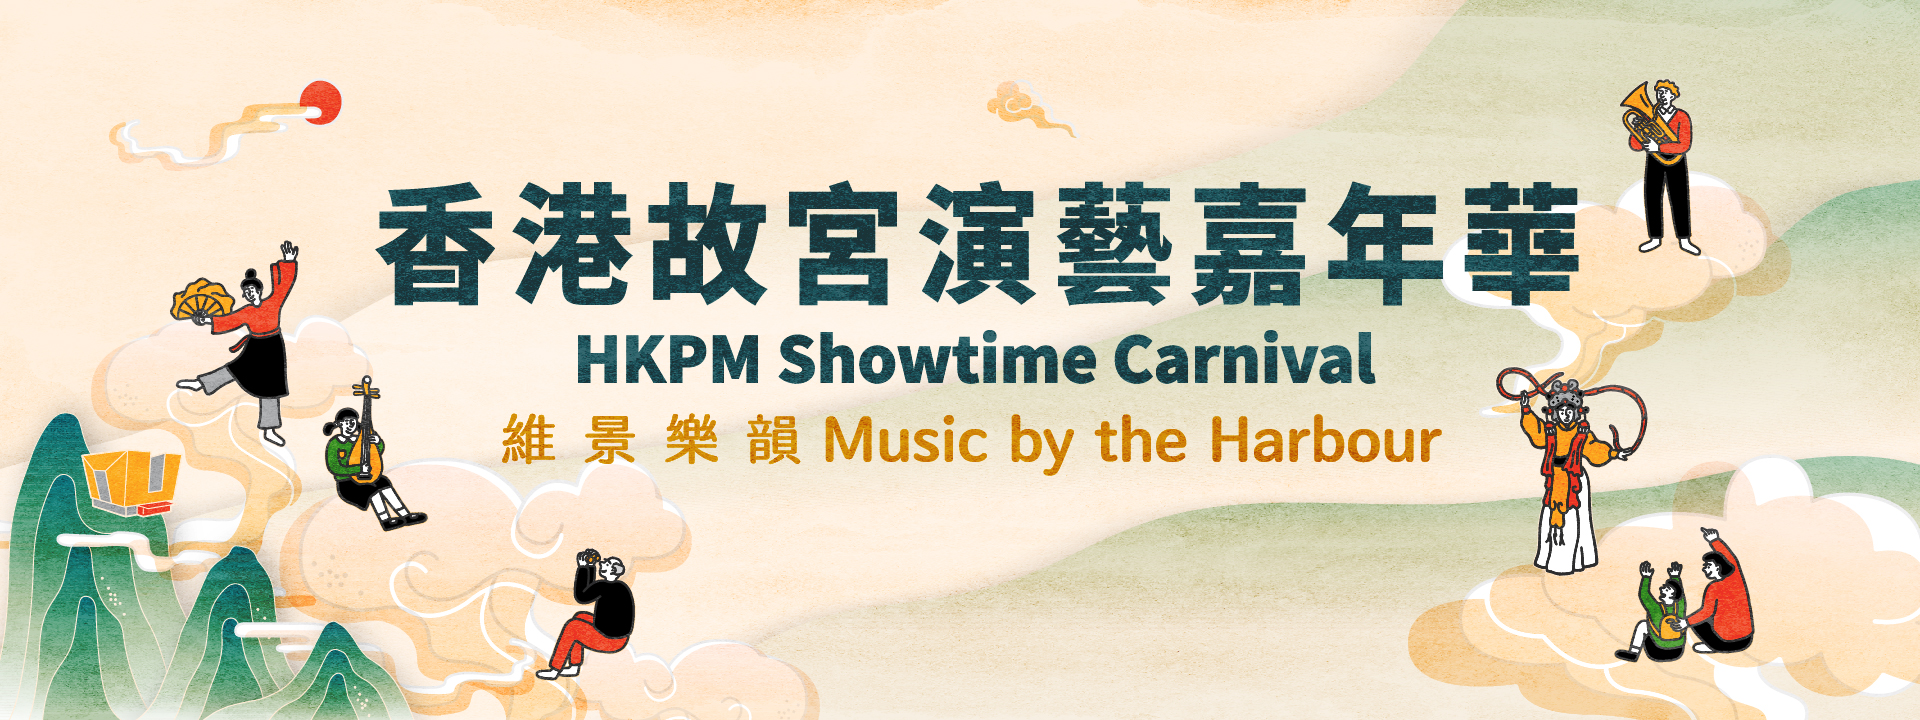 HKPM Showtime Carnival